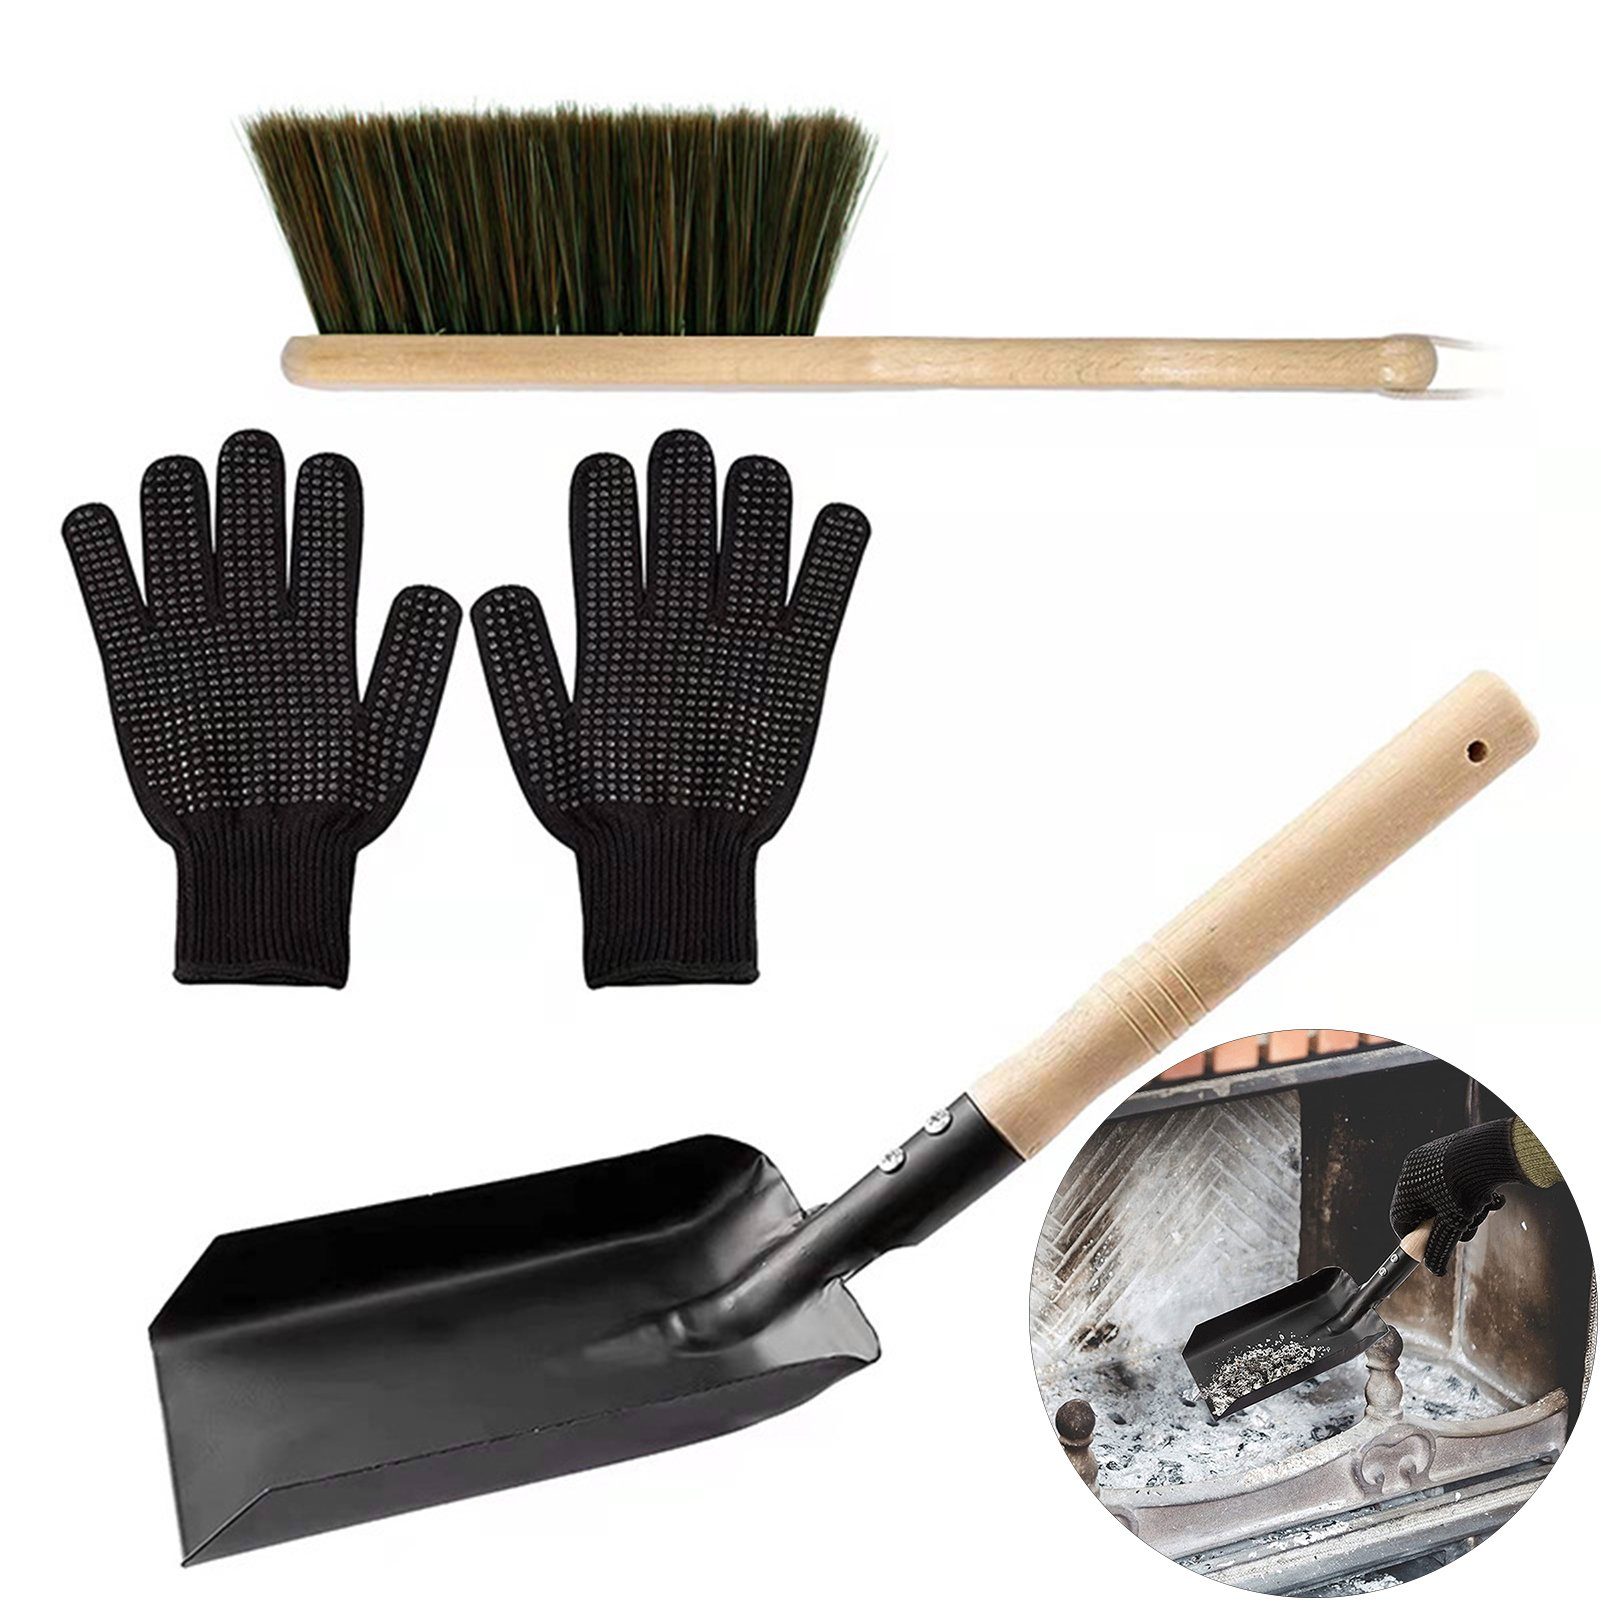 Rutaqian Reinigungs-Set 3-teiliges Set Kamin Reinigungswerkzeug Werkzeuge für den Außenkamin, (mit Ascheschaufel, Bürste, Schwarze Silikon-Handschuhe, for Fireplace Fire Pit, Camping, Barbecue, Wood Stove, Hearth)